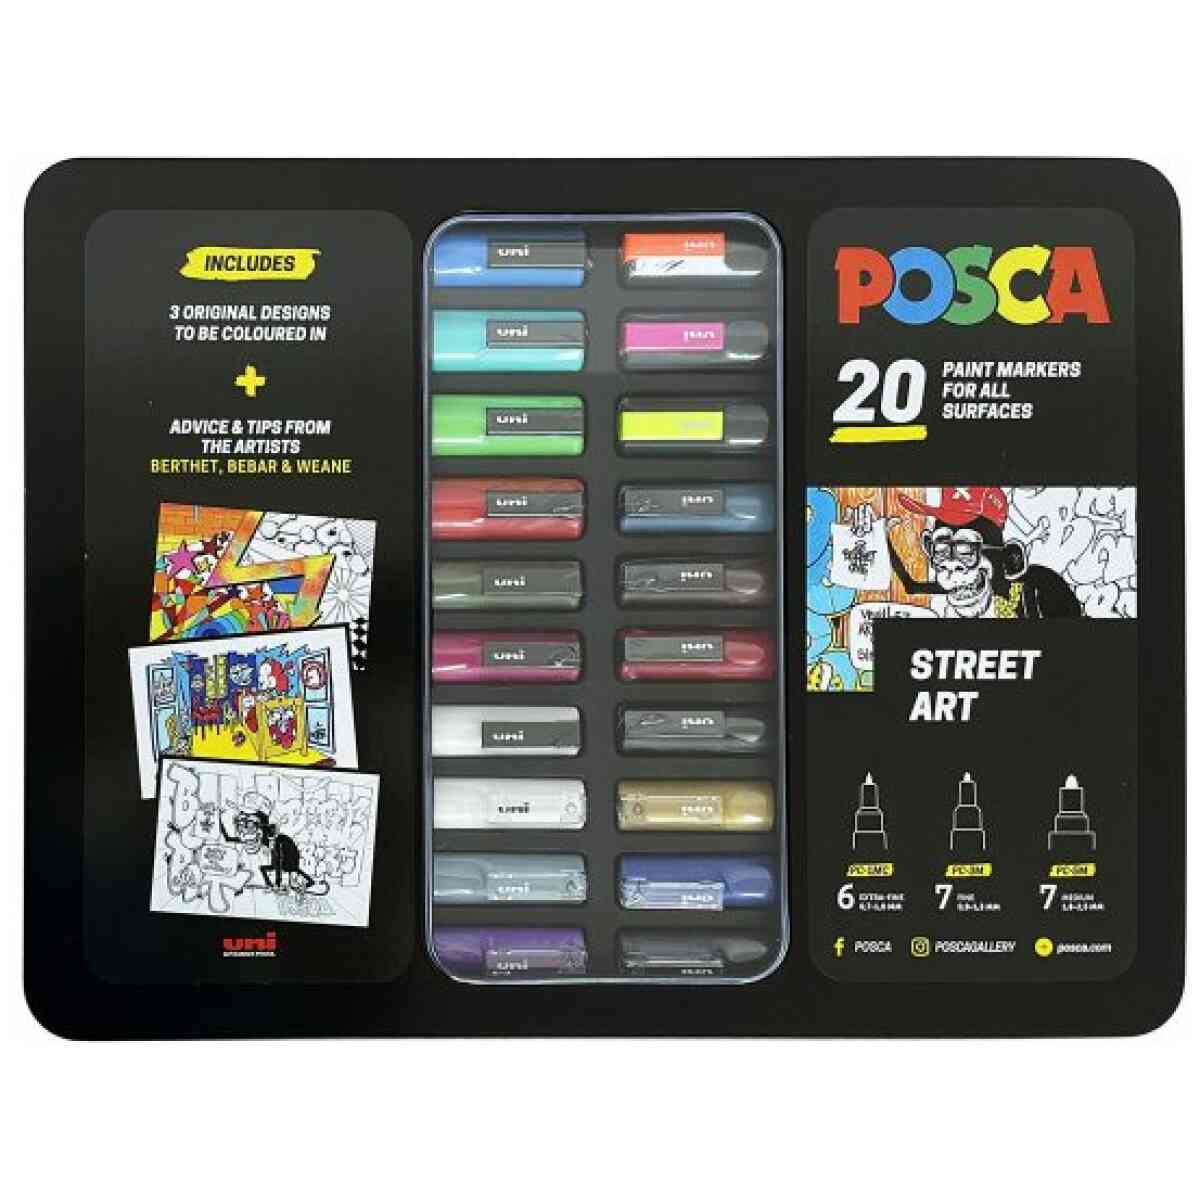 Uni Posca Markers Street Art Metal Box 20 set All 3649 2 600x600 1